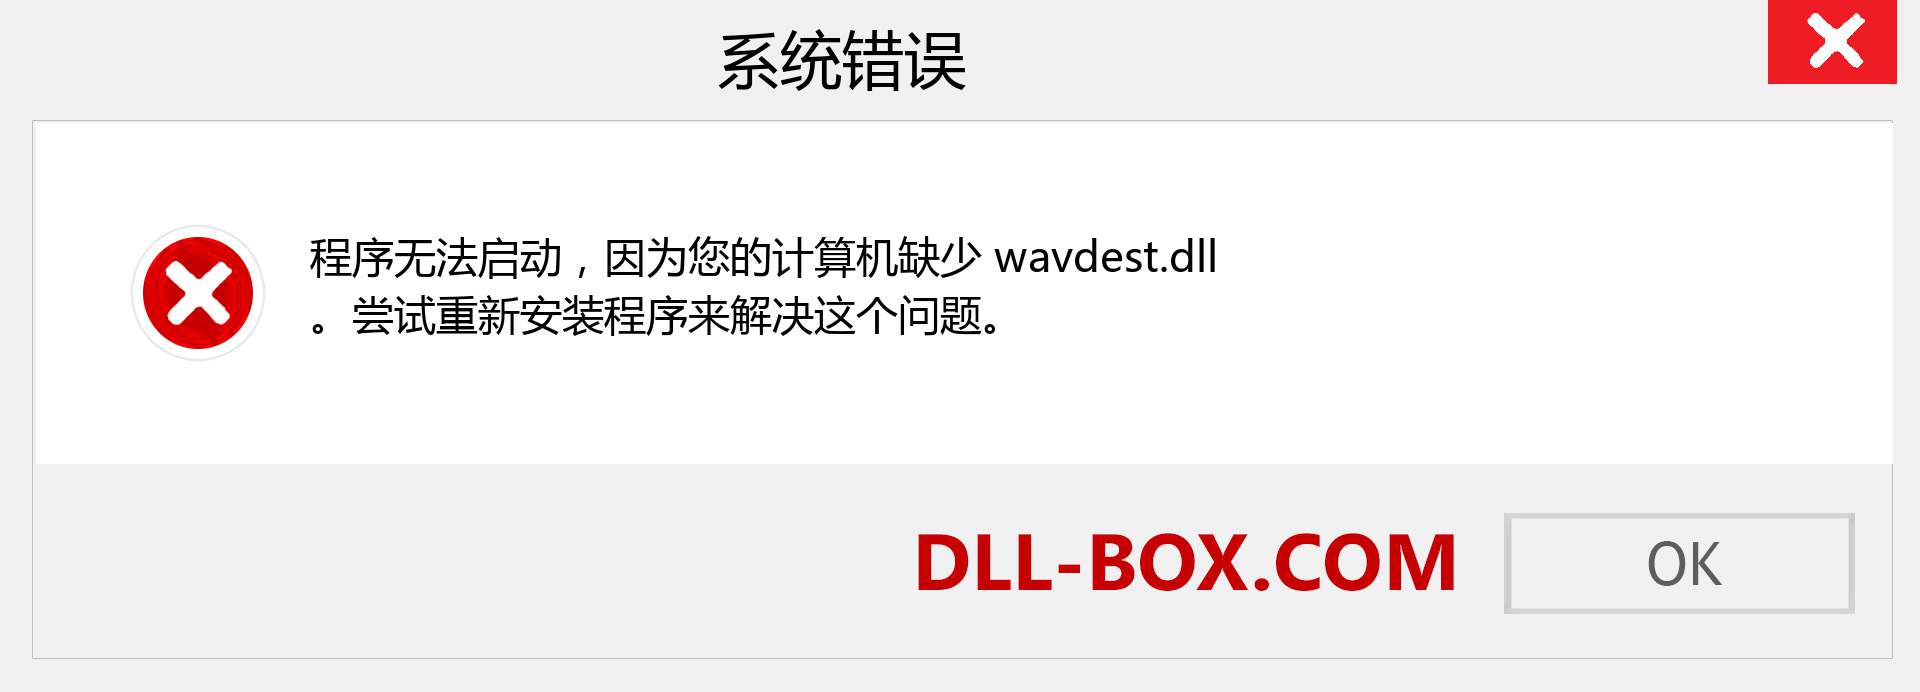 wavdest.dll 文件丢失？。 适用于 Windows 7、8、10 的下载 - 修复 Windows、照片、图像上的 wavdest dll 丢失错误